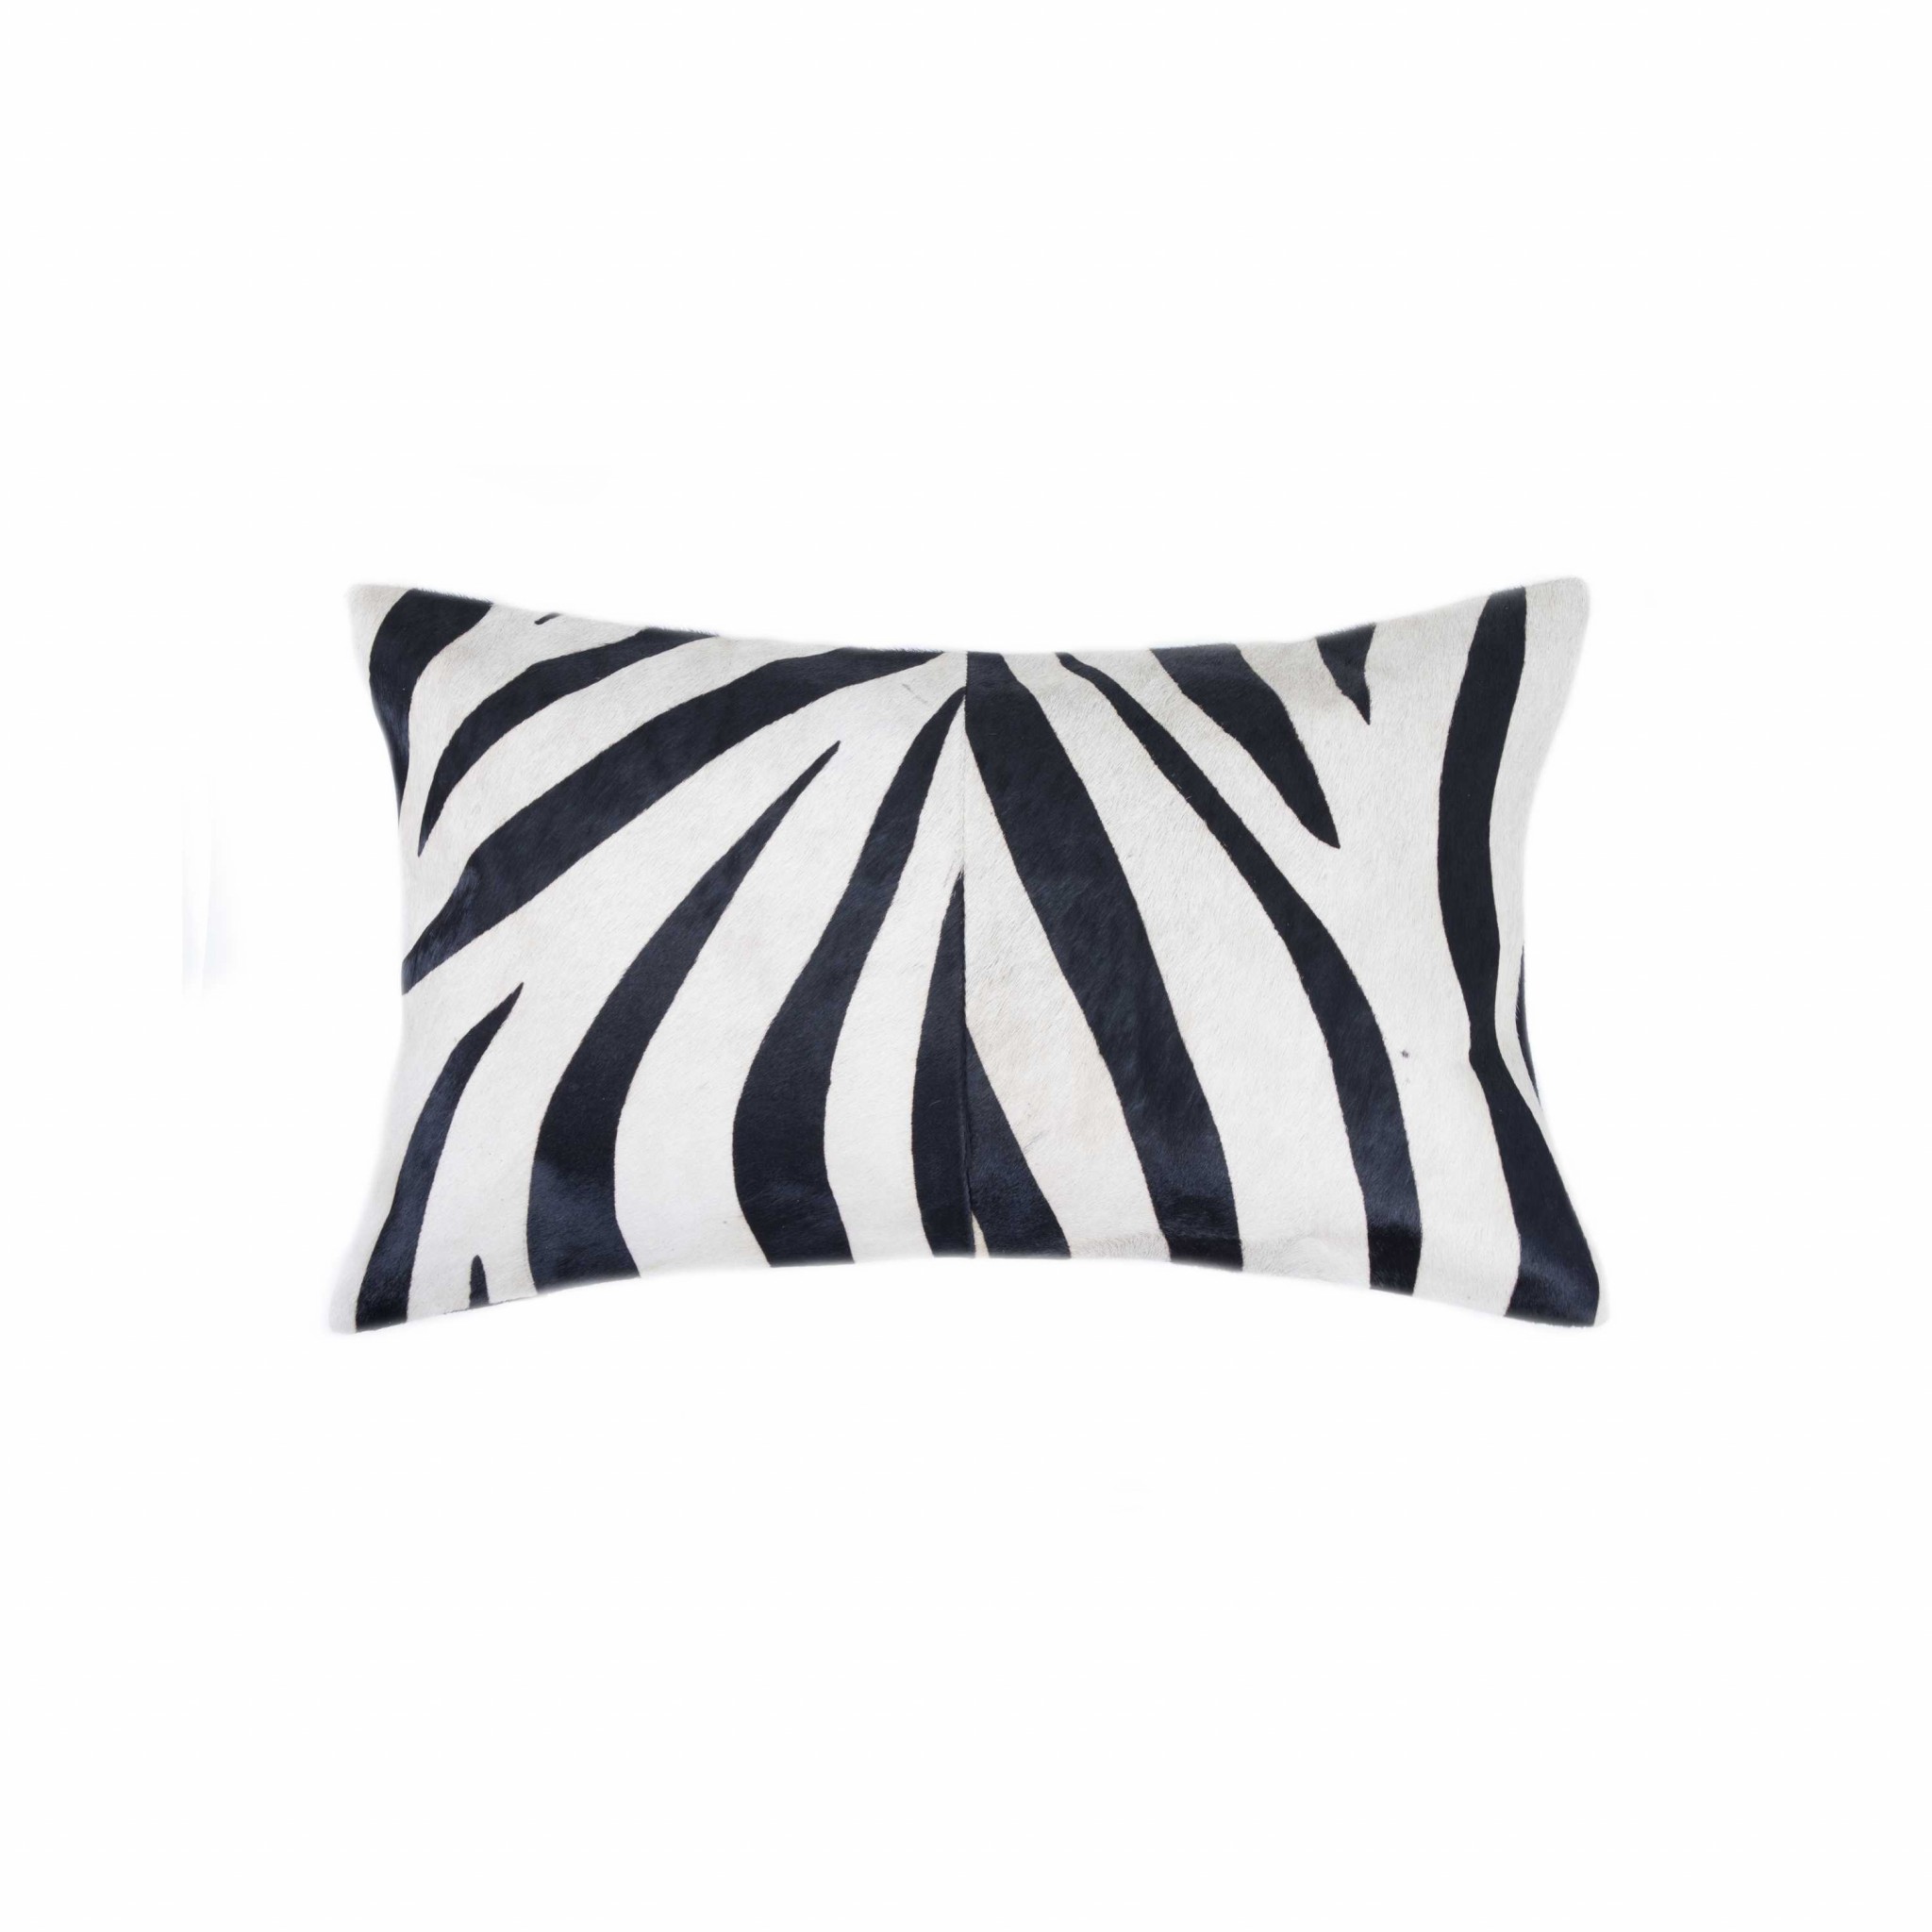 12" x 20" x 5" Zebra Black On White Cowhide - Pillow